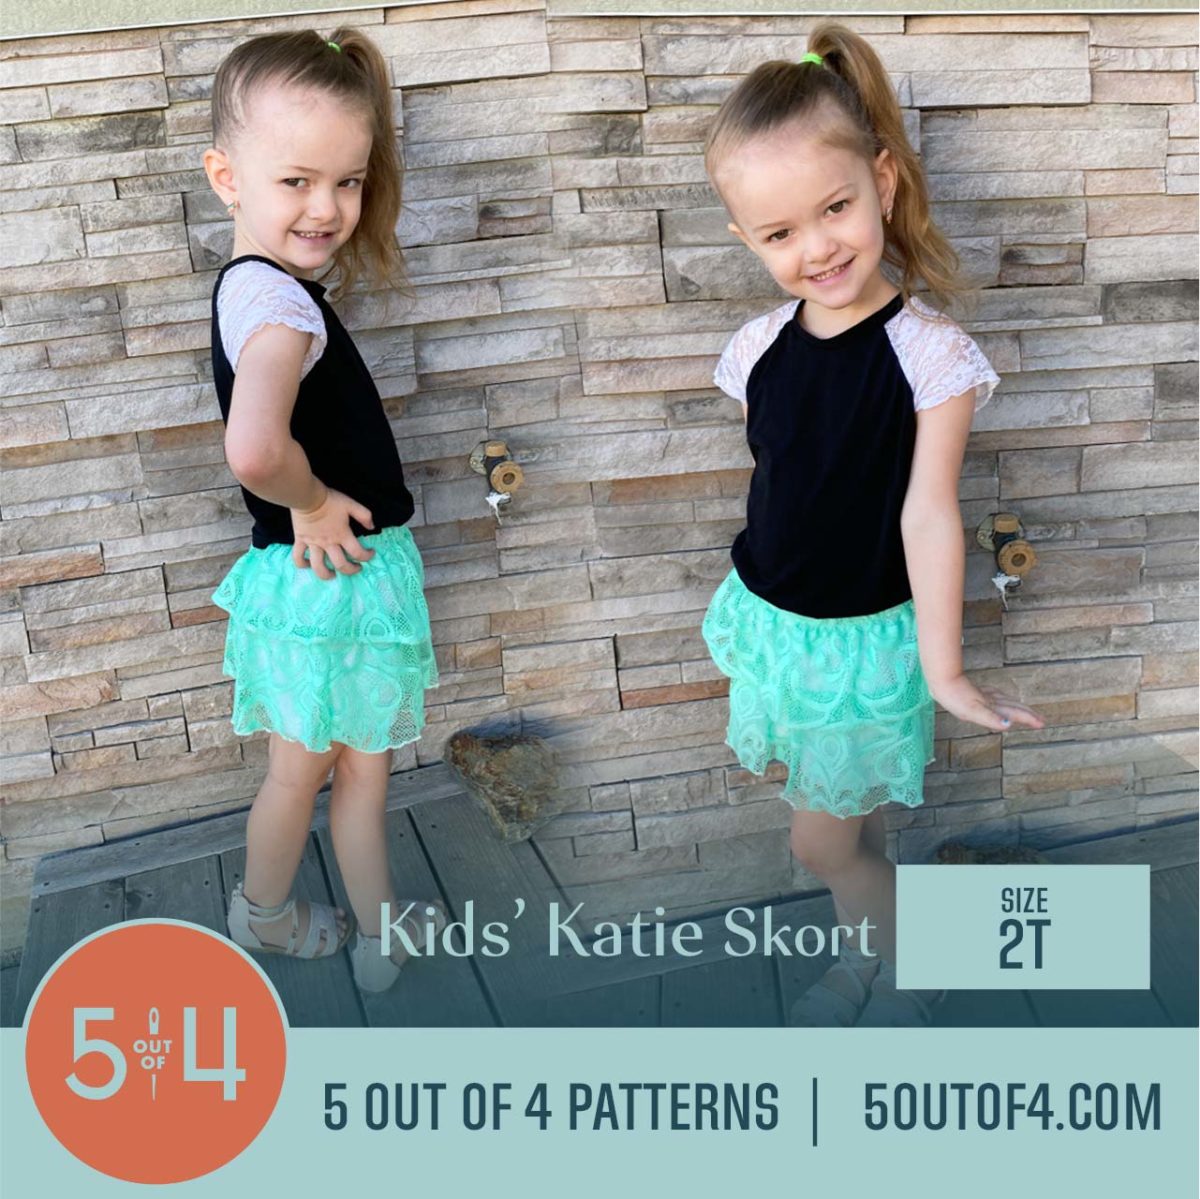 Kids' Katie Skort - 5 out of 4 Patterns